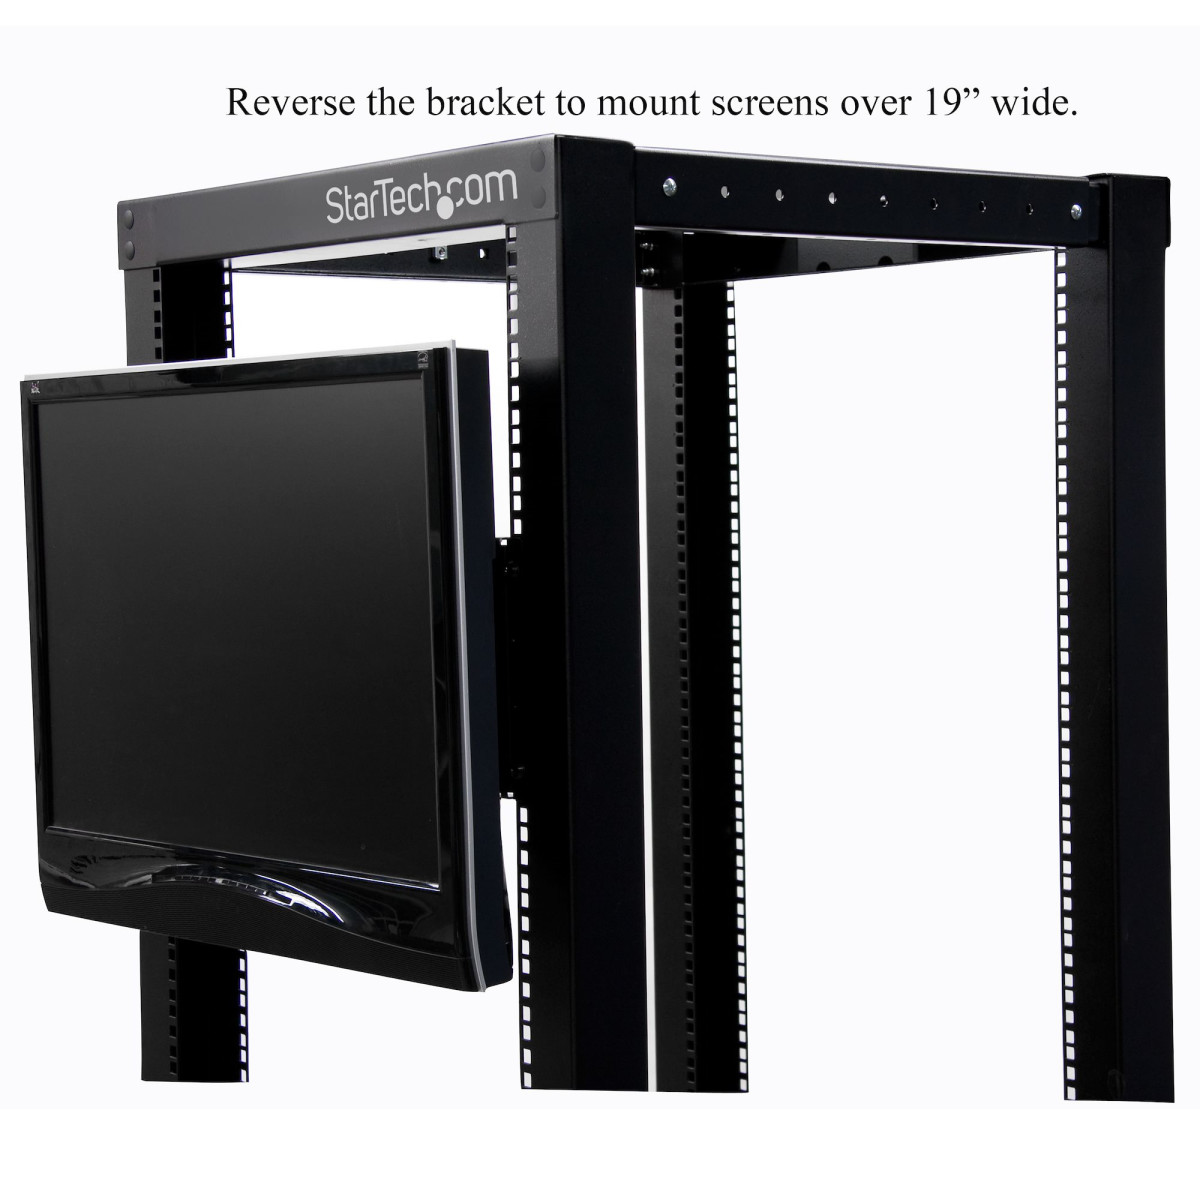 VESA LCD Monitor Bracket for 19in Rack